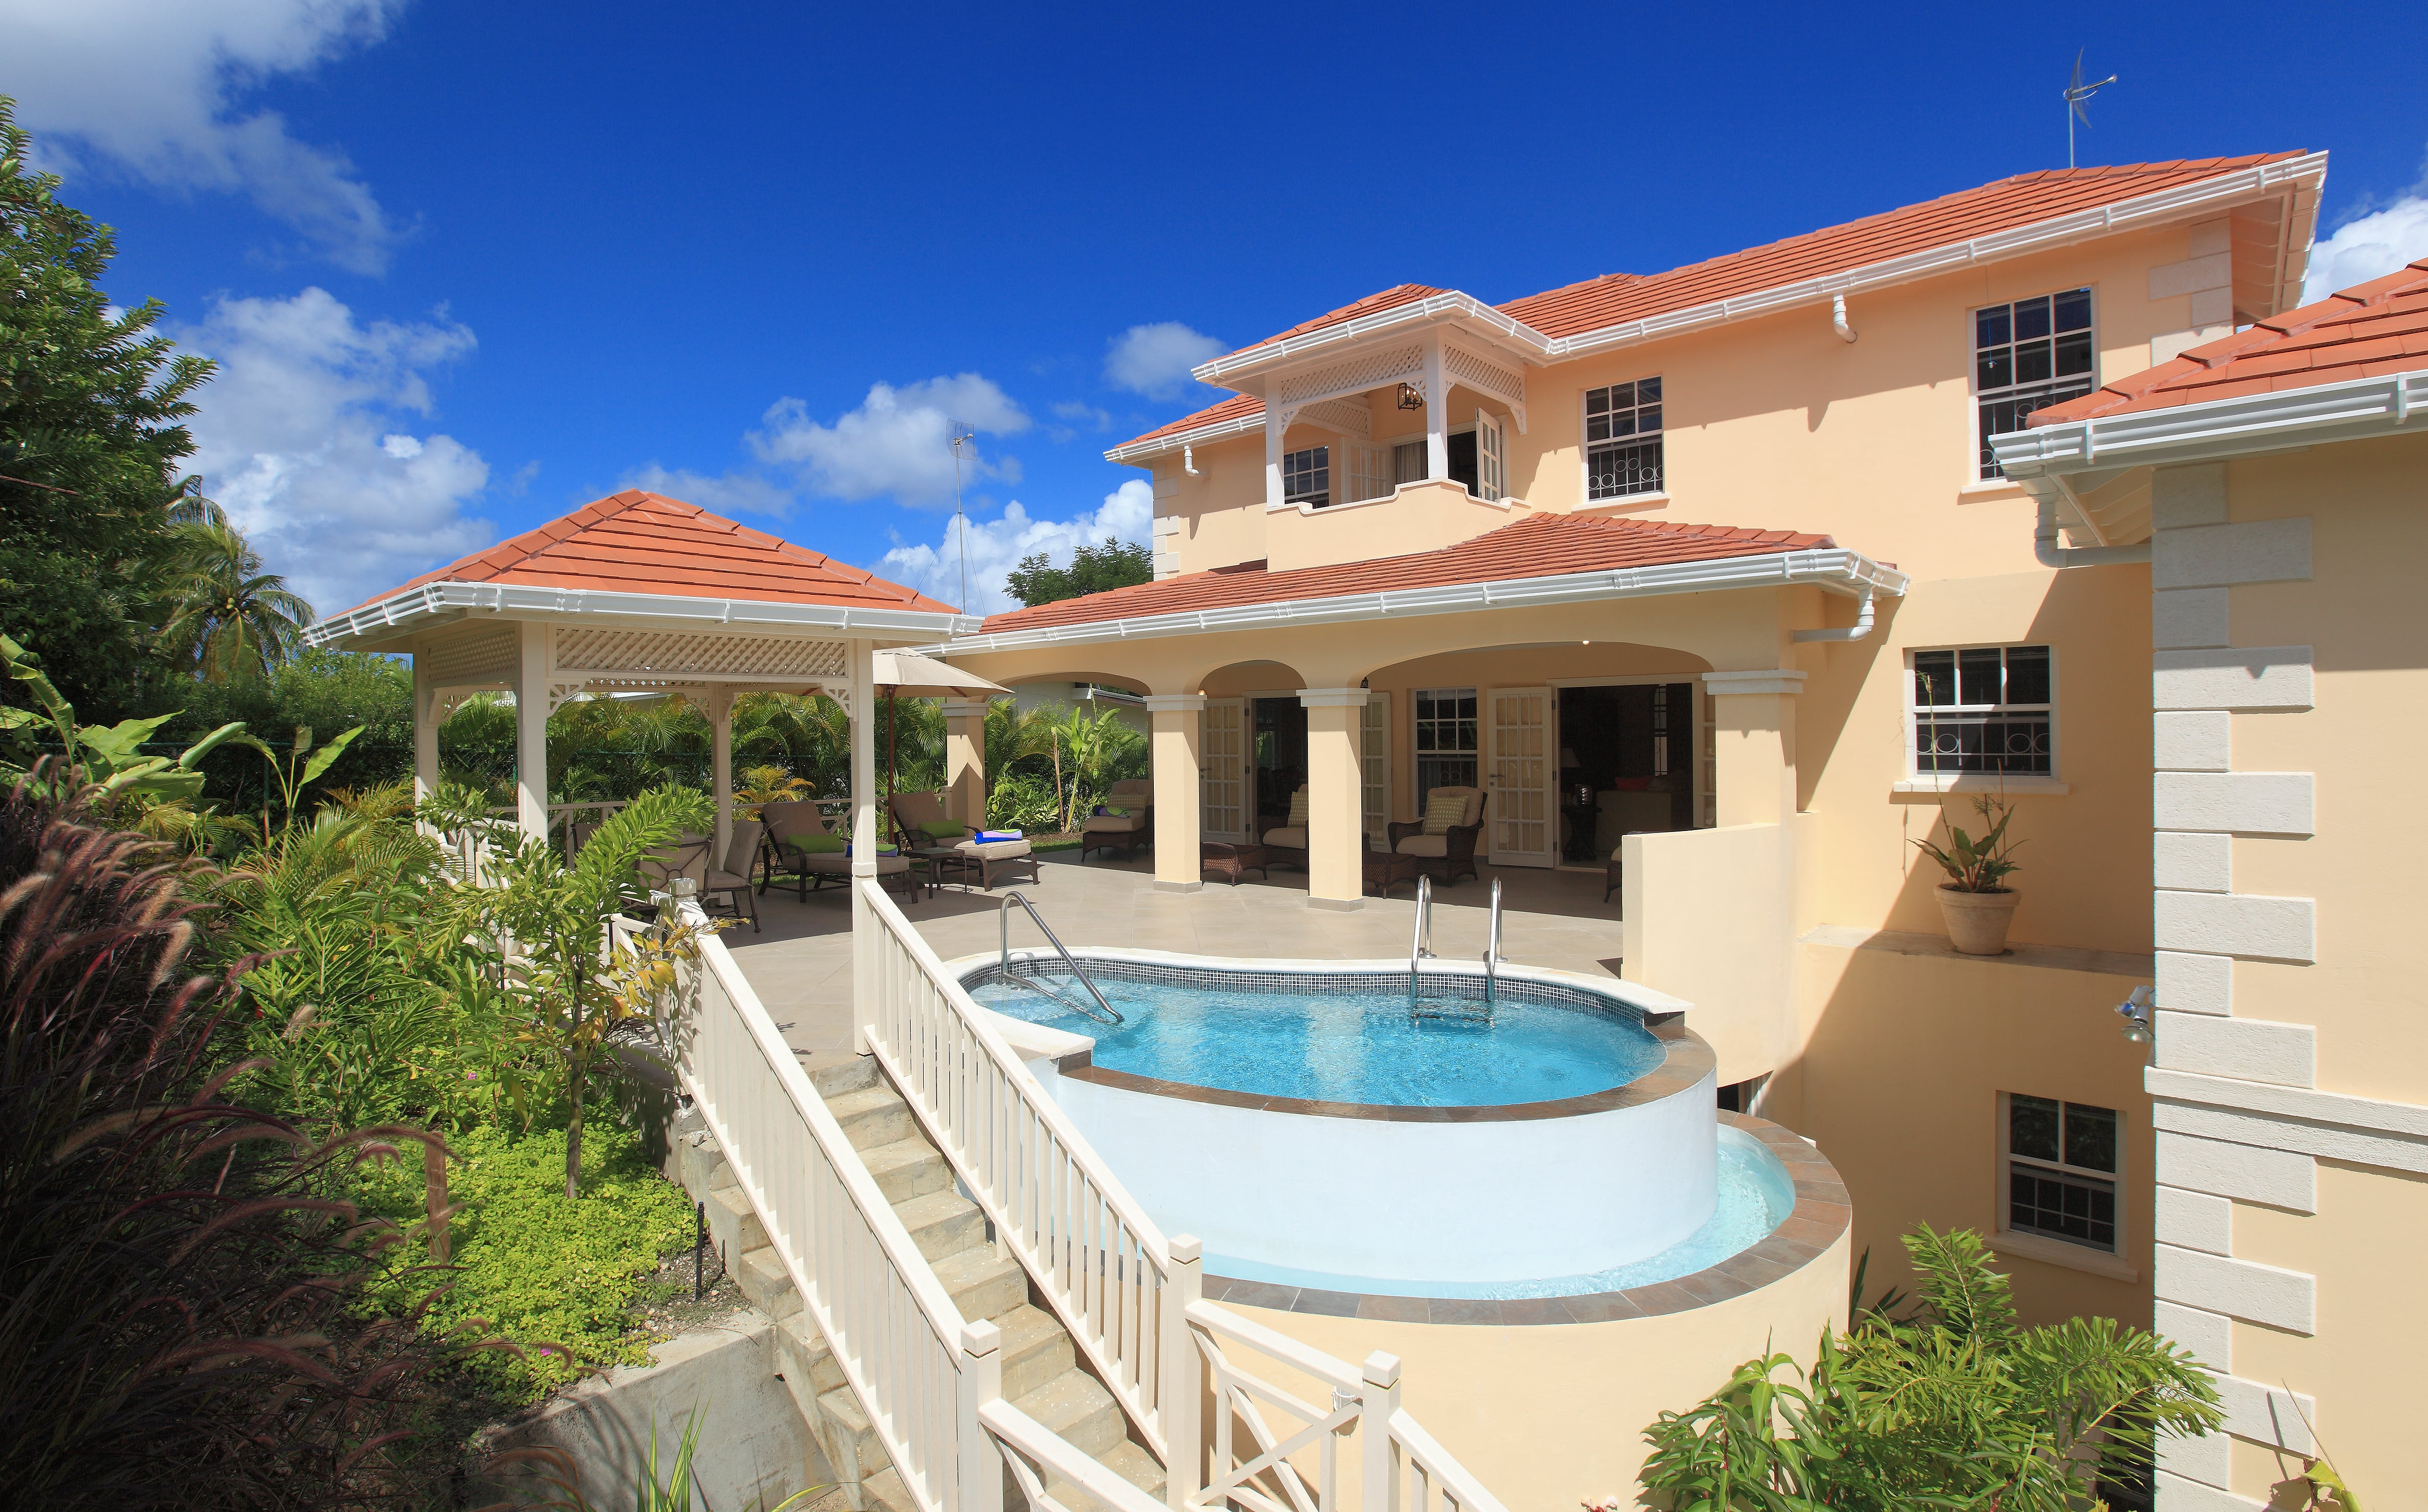 Vakantiewoning, villa, st.james,luxe vakantie, Barbados, 6 personen 